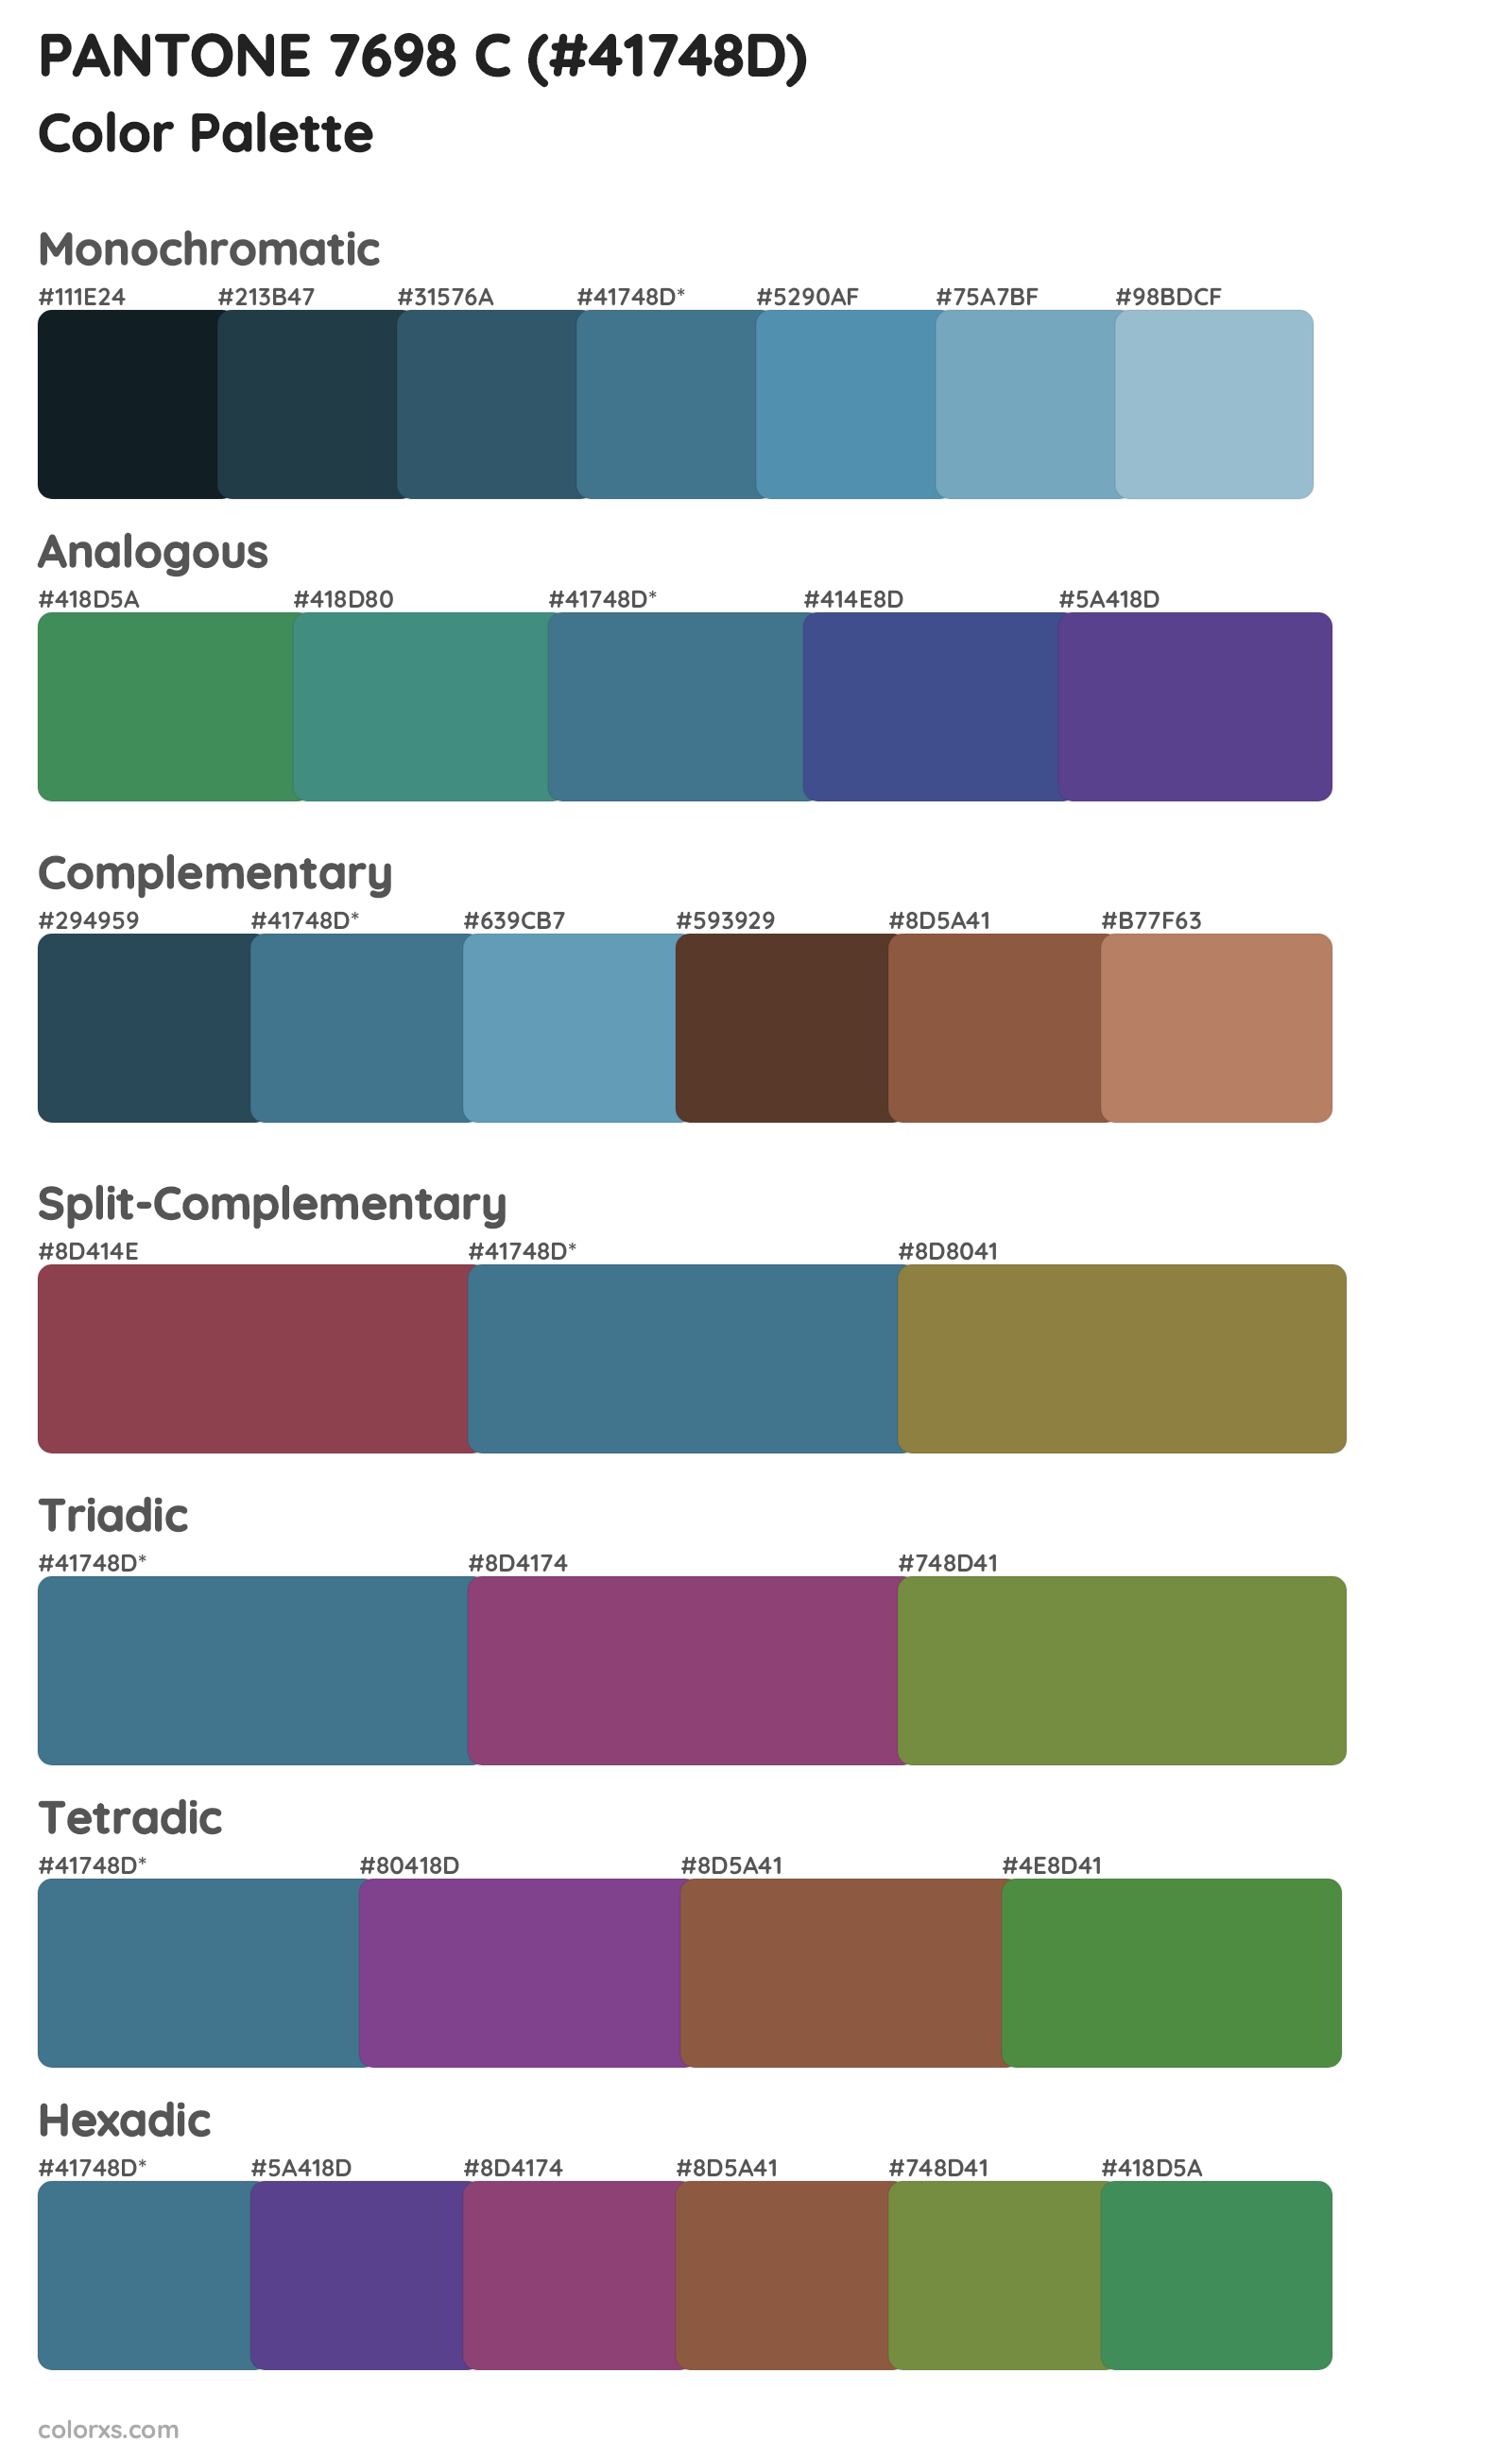 PANTONE 7698 C Color Scheme Palettes